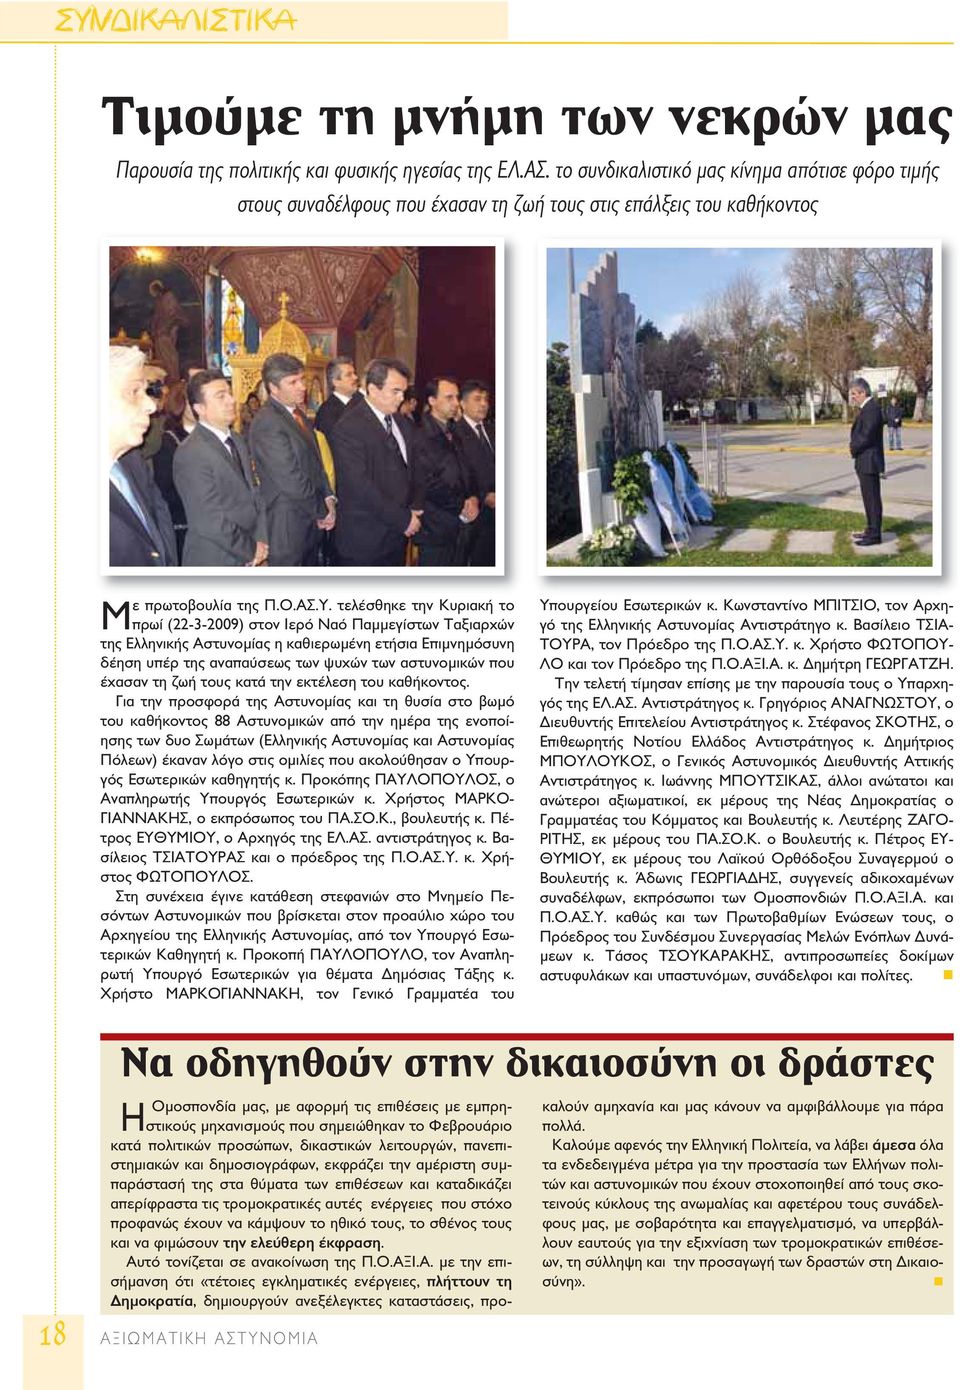 τελέσθηκε την Κυριακή το πρωί (22-3-2009) στον Ιερό Ναό Παμμεγίστων Ταξιαρχών της Ελληνικής Αστυνομίας η καθιερωμένη ετήσια Επιμνημόσυνη δέηση υπέρ της αναπαύσεως των ψυχών των αστυνομικών που έχασαν